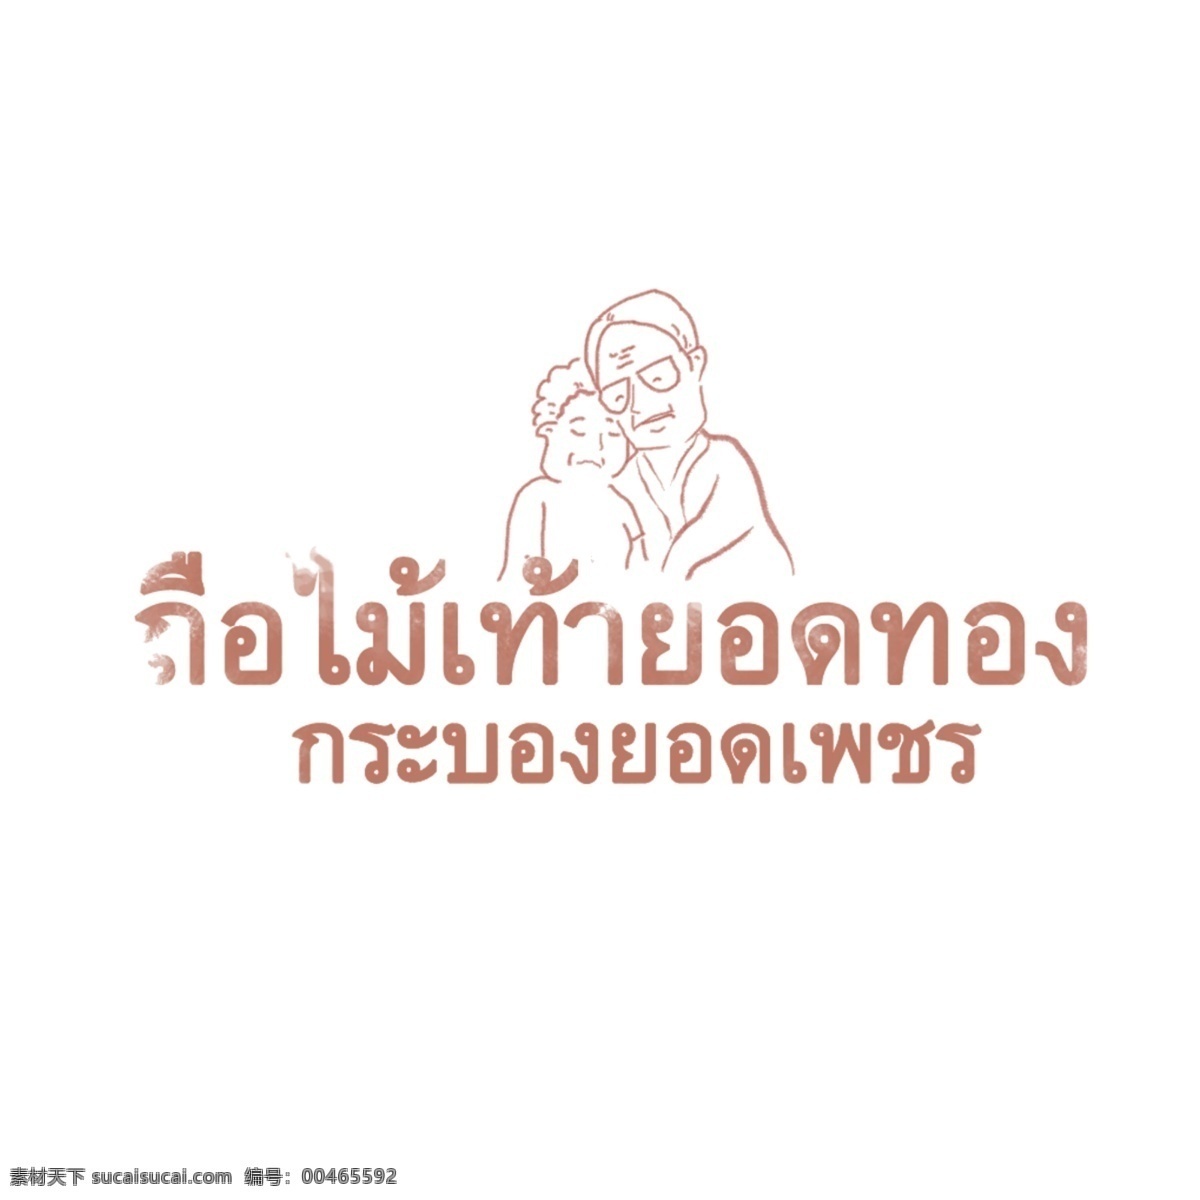 汉字 字体 泰国人 喜欢 棕色 高层 管理 人员 持有 黄金 爱